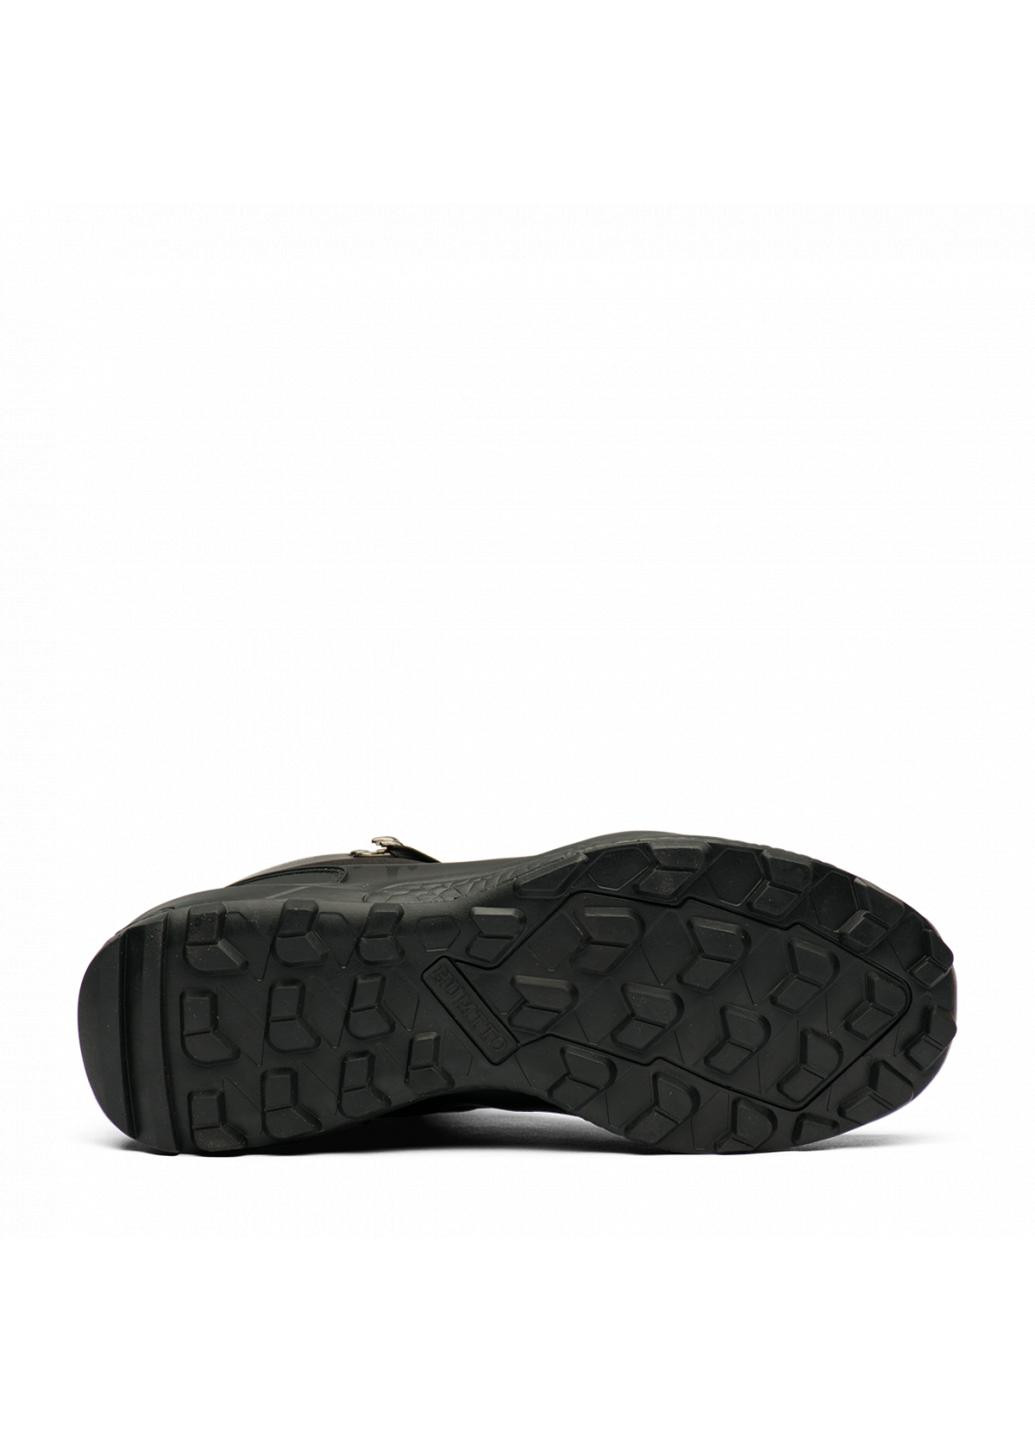 Черные зимние ботинки мужские 220939a1 Humtto